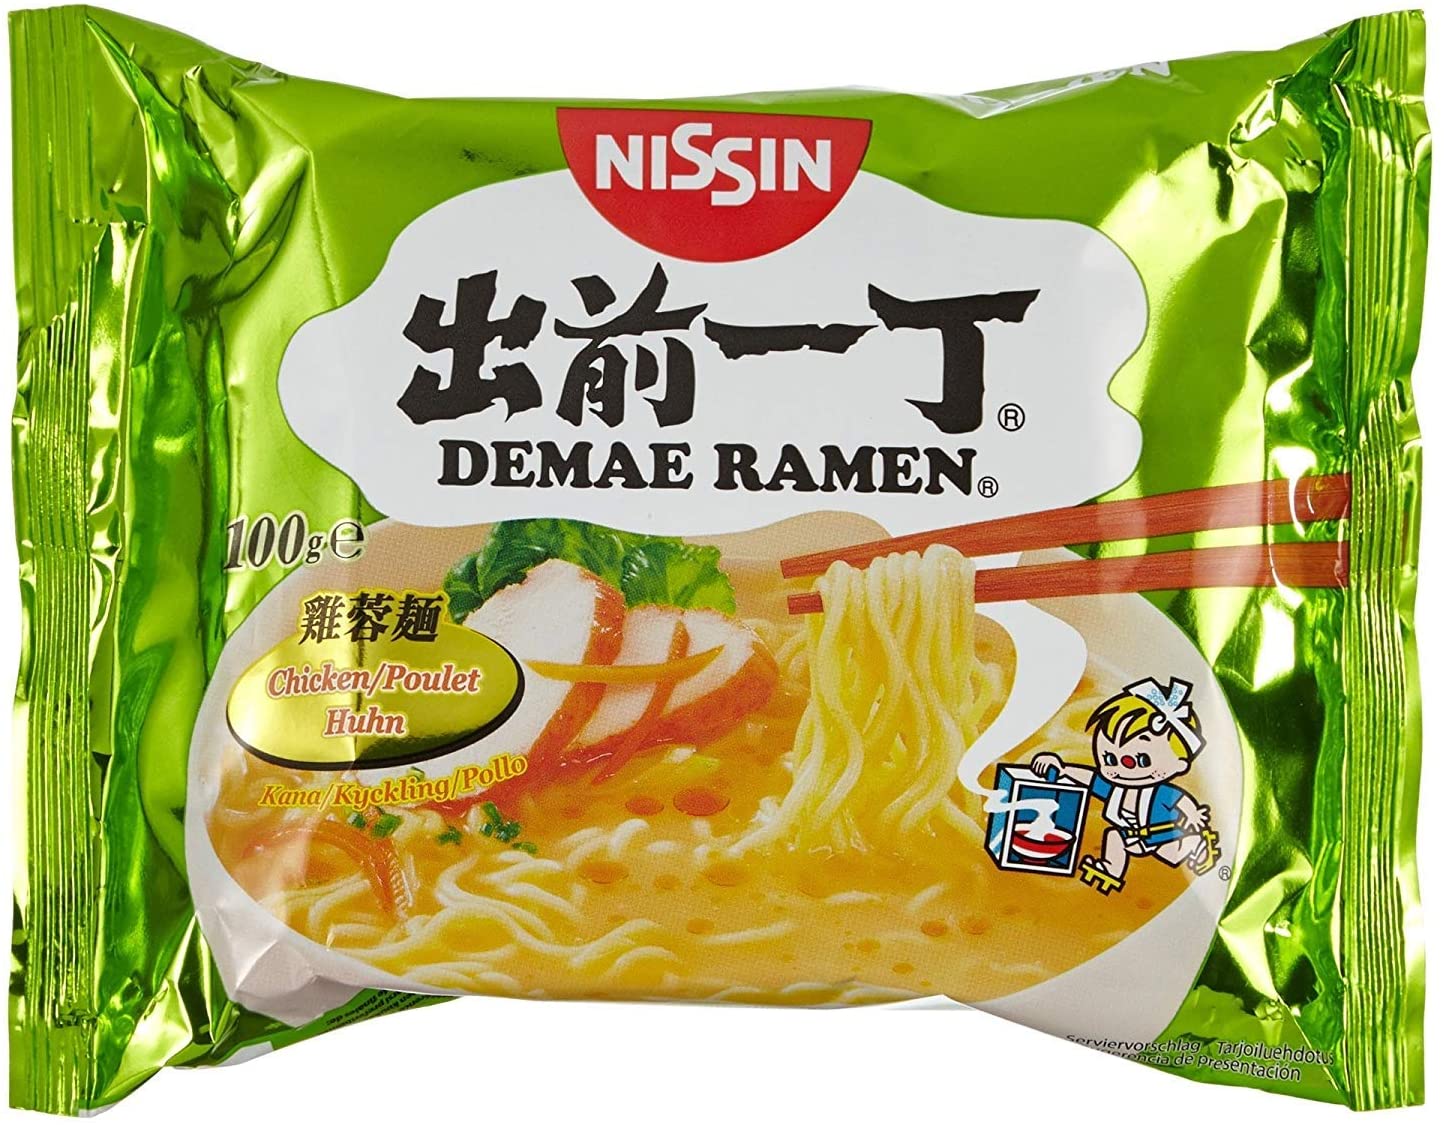 Demae Ramen Japanese Noodles Chicken Flavour 100g by Nissin